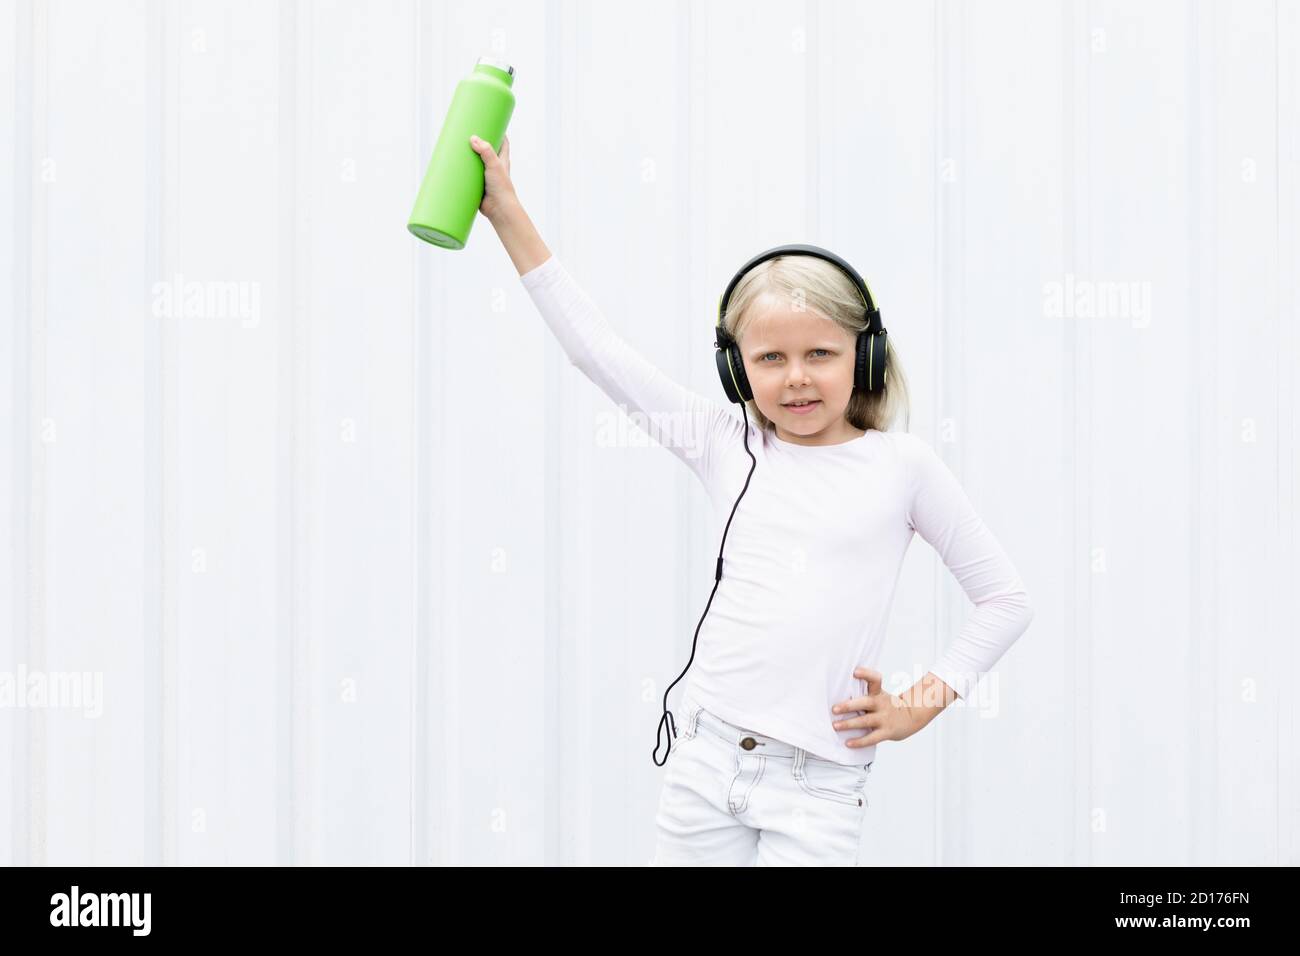 Jeune fille blonde sur fond blanc buvez de l'eau de source fraîche provenant d'un flacon vert réutilisable. Un style de vie sain en ville d'été. Banque D'Images